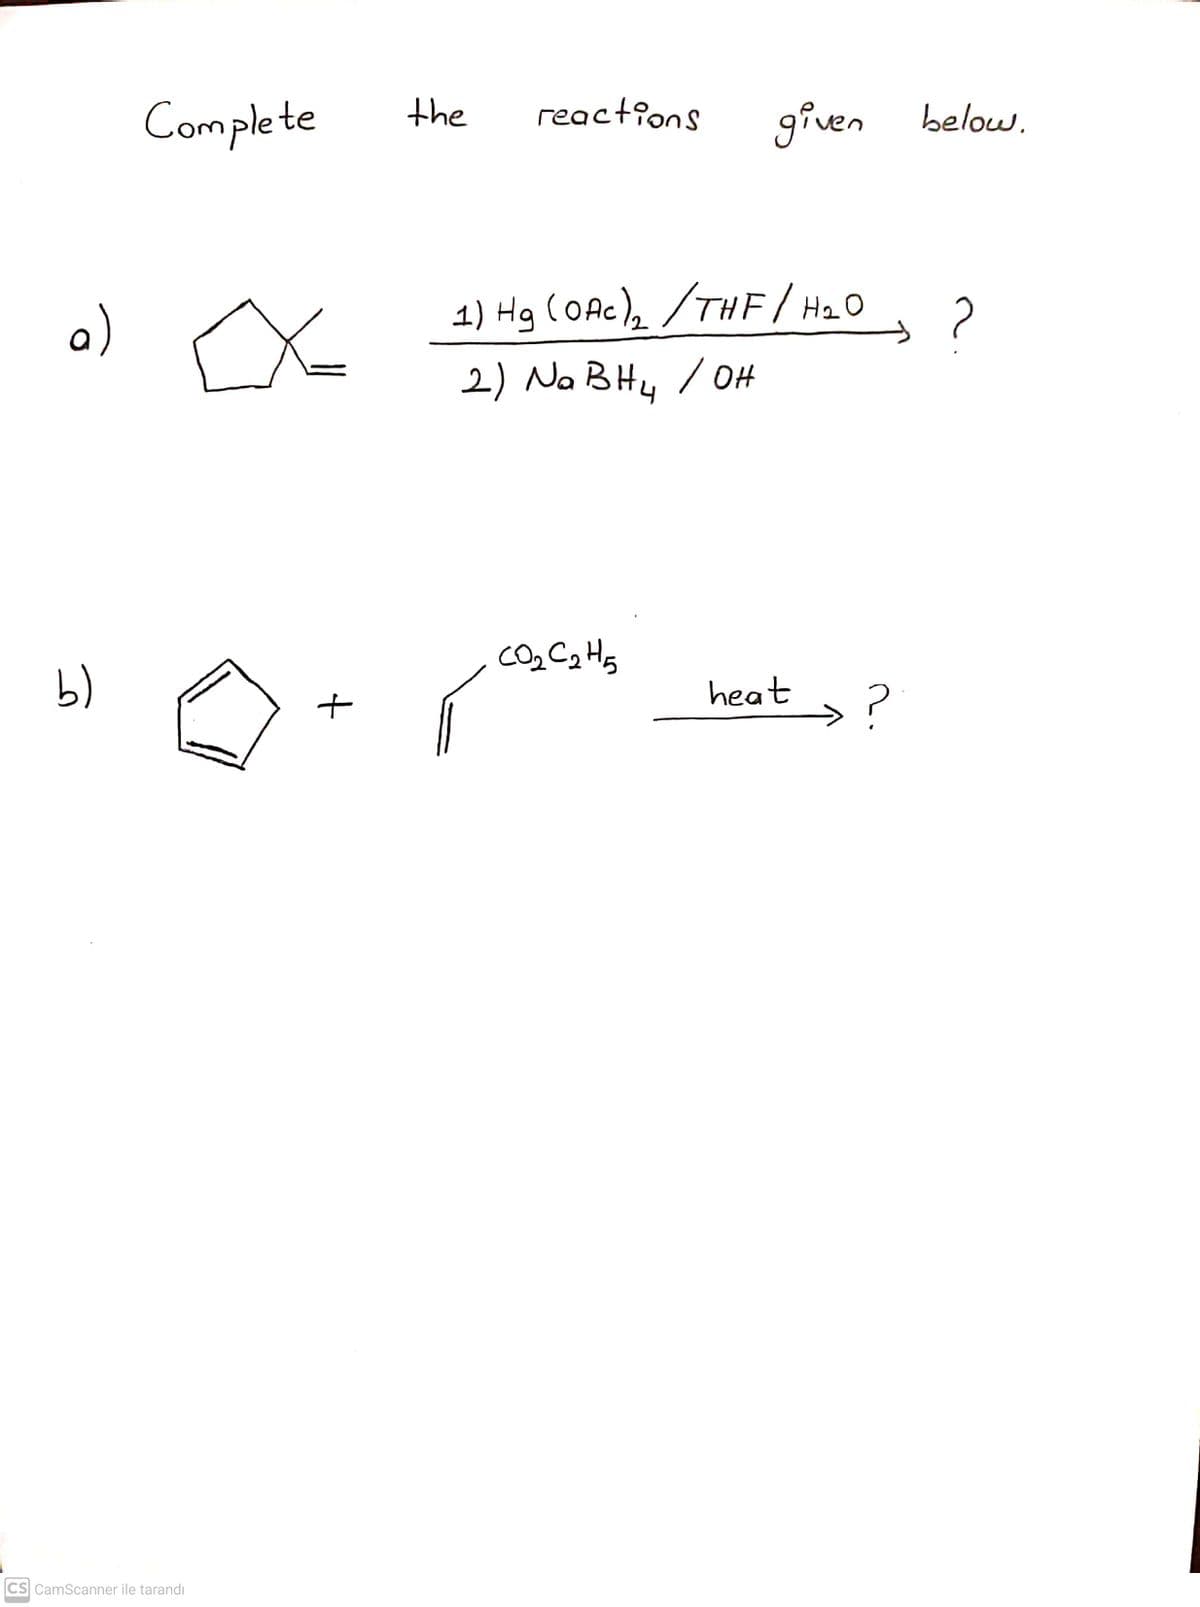 Complete
the
reactions
given
below.
a)
1) Hg (OAc), /THE/H2O
2) Na BHu /OH
b)
heat
>?
CS CamScanner ile tarandı
